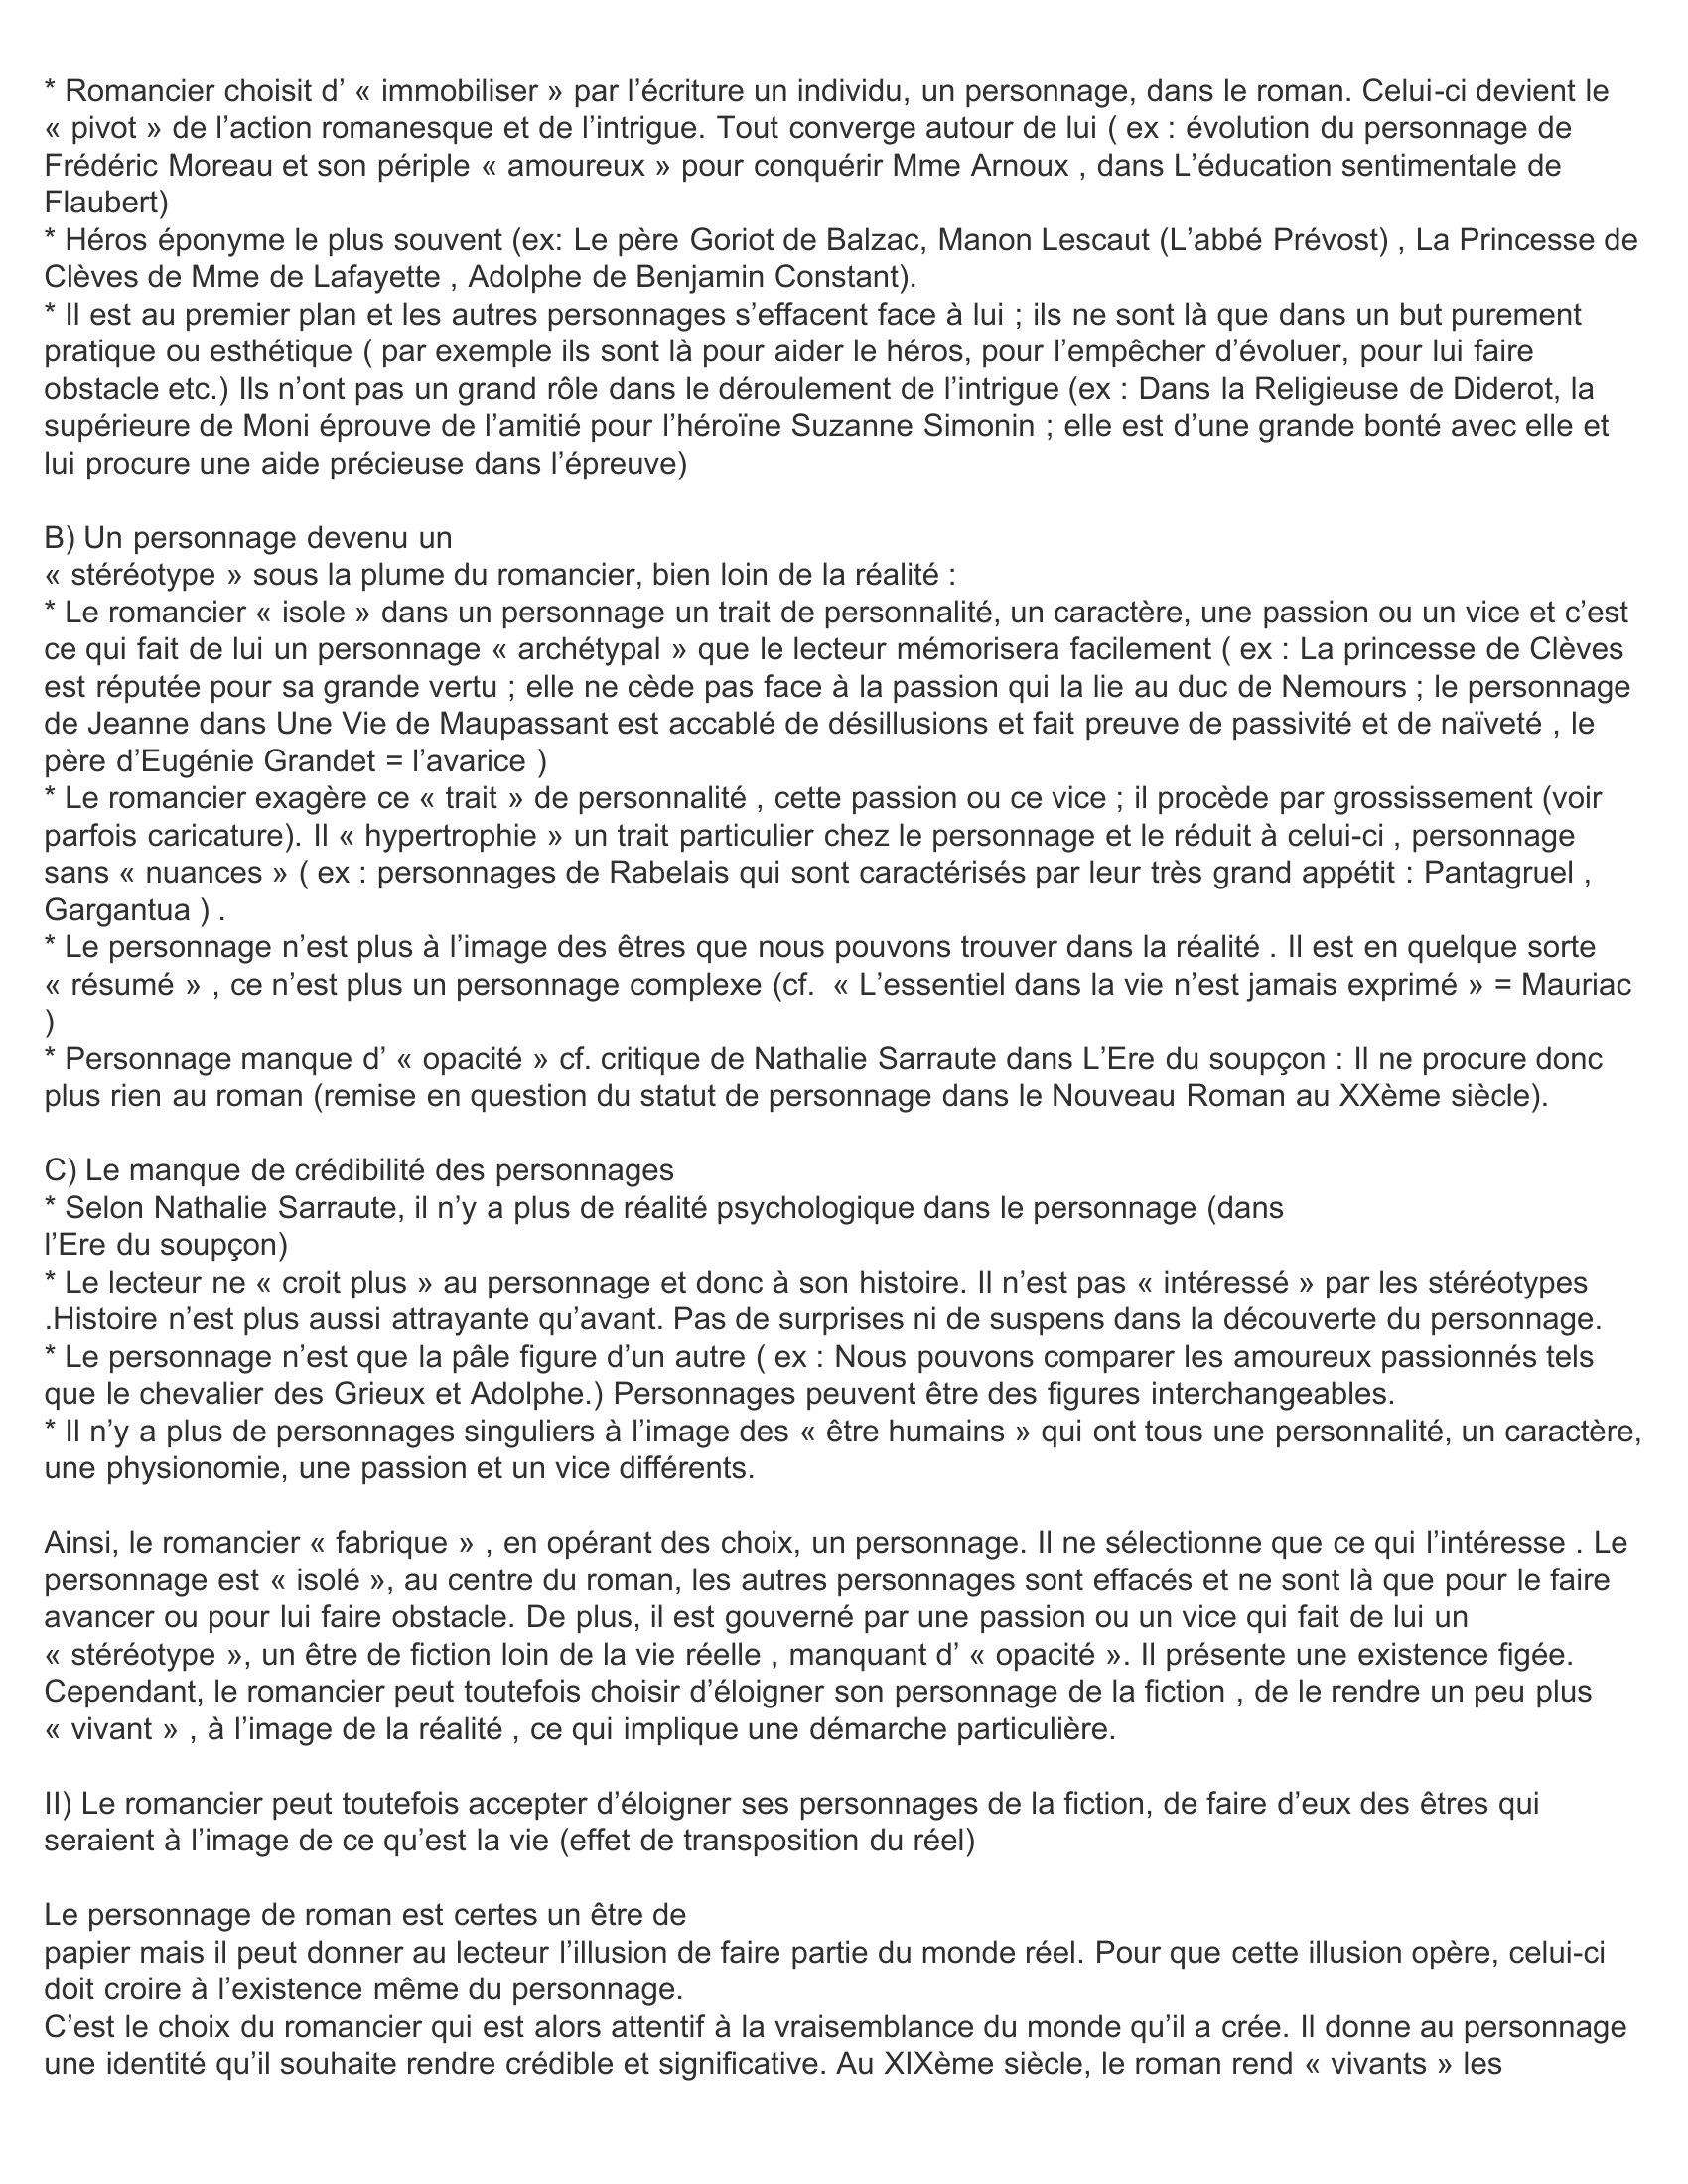 Prévisualisation du document DISSERTATION sur le personnage de roman selon une citation de François Mauriac (sujet CAPES 2004) Introduction et développement synthétique